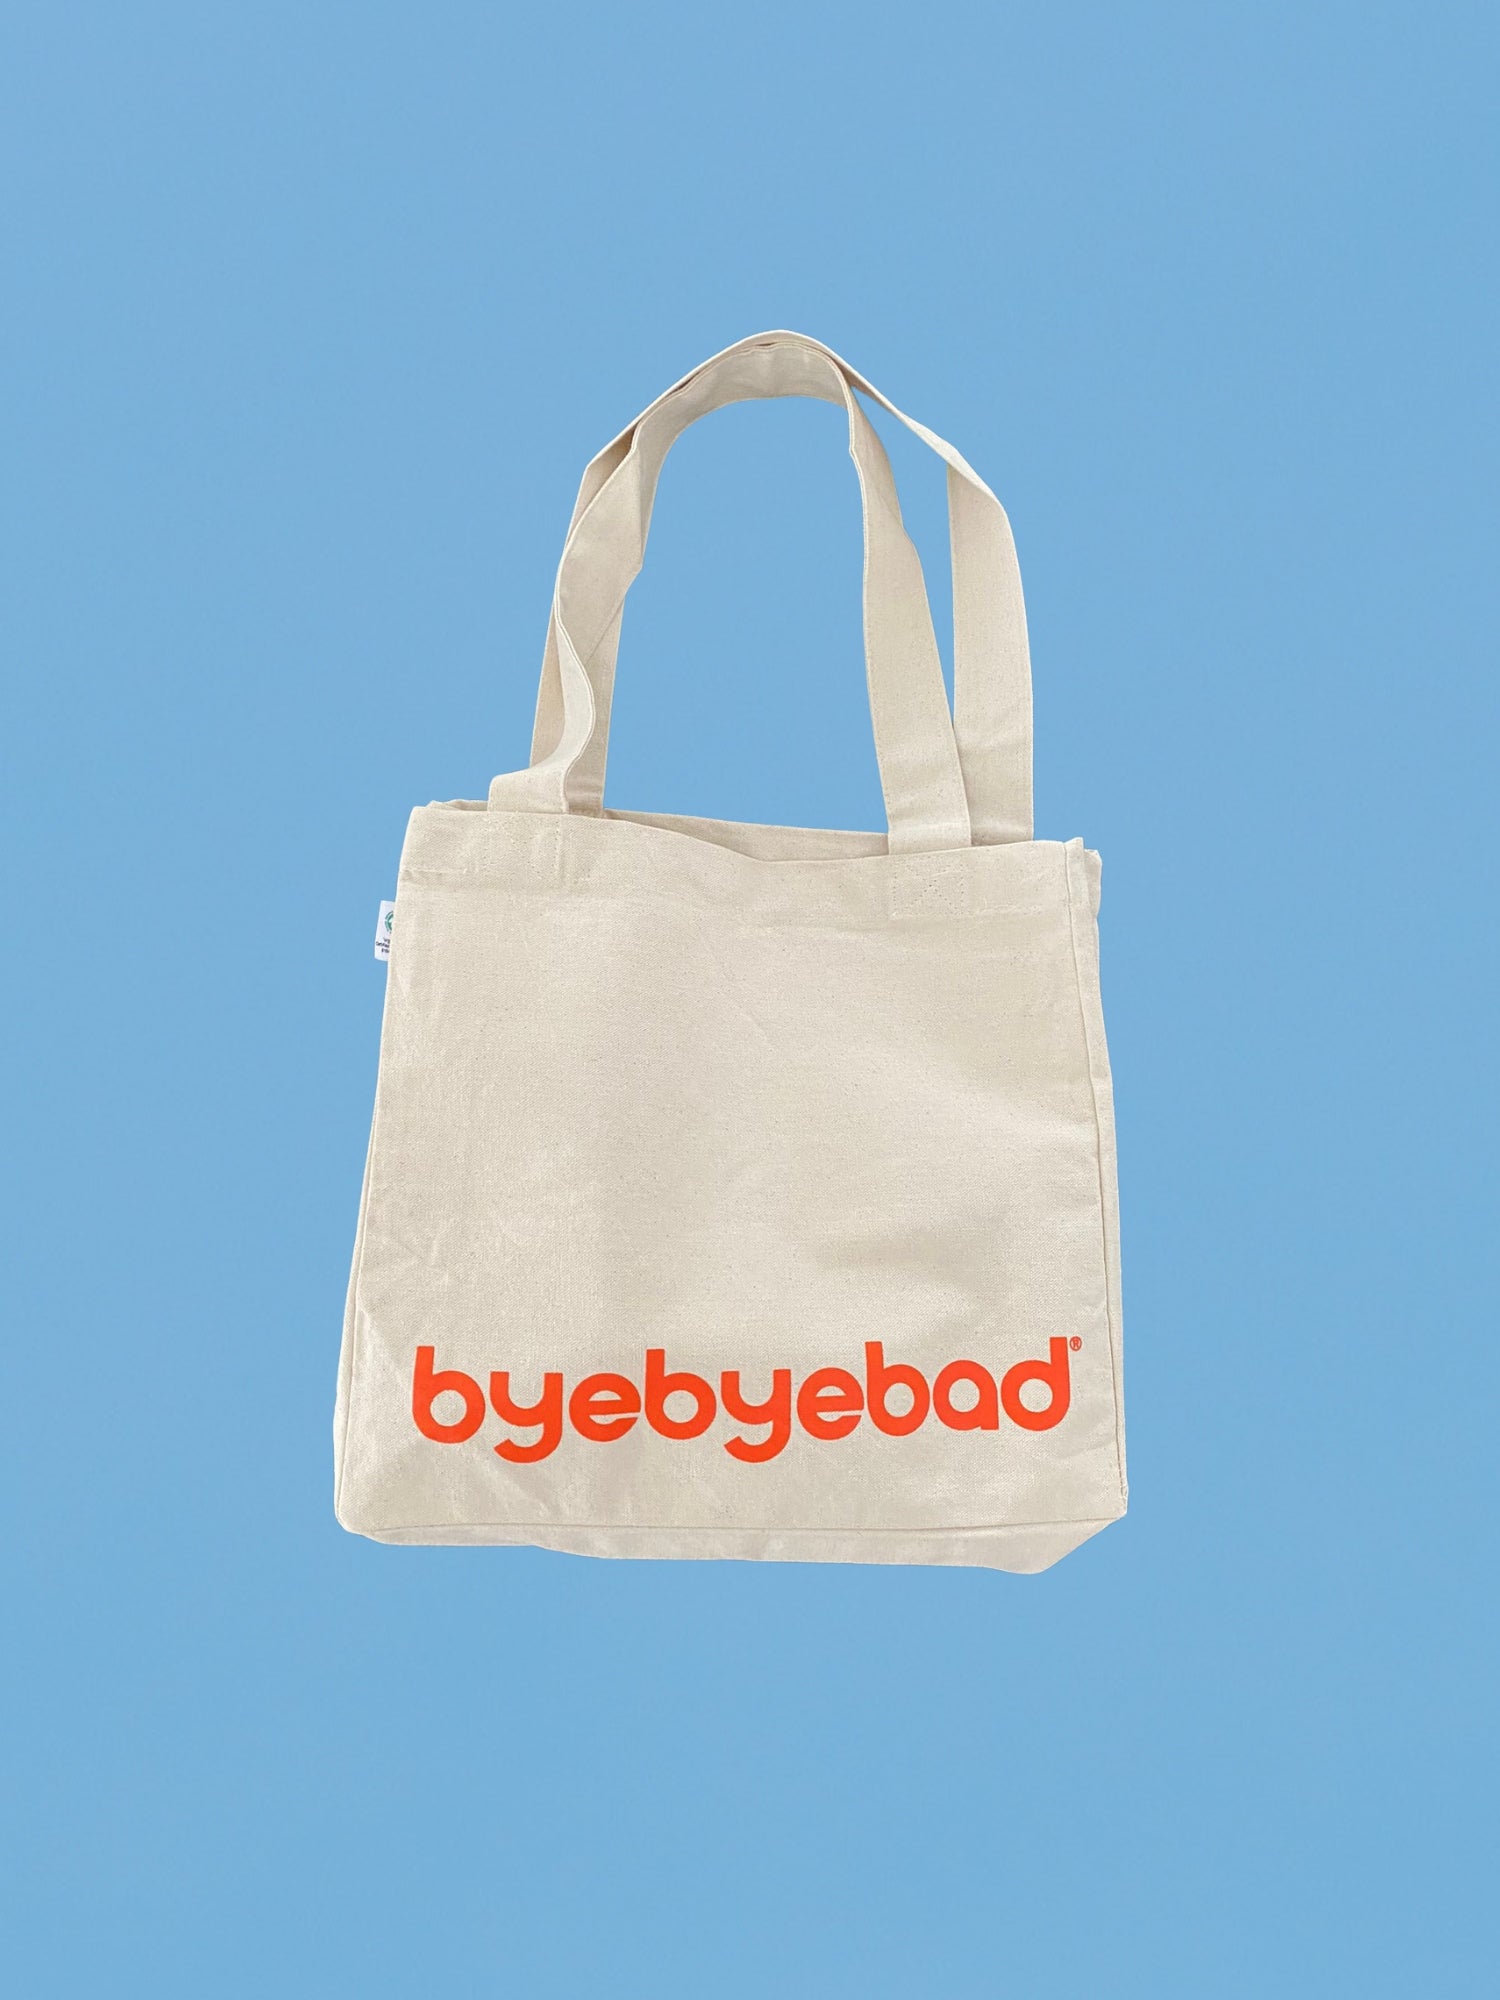 byebyebad™ tote bag